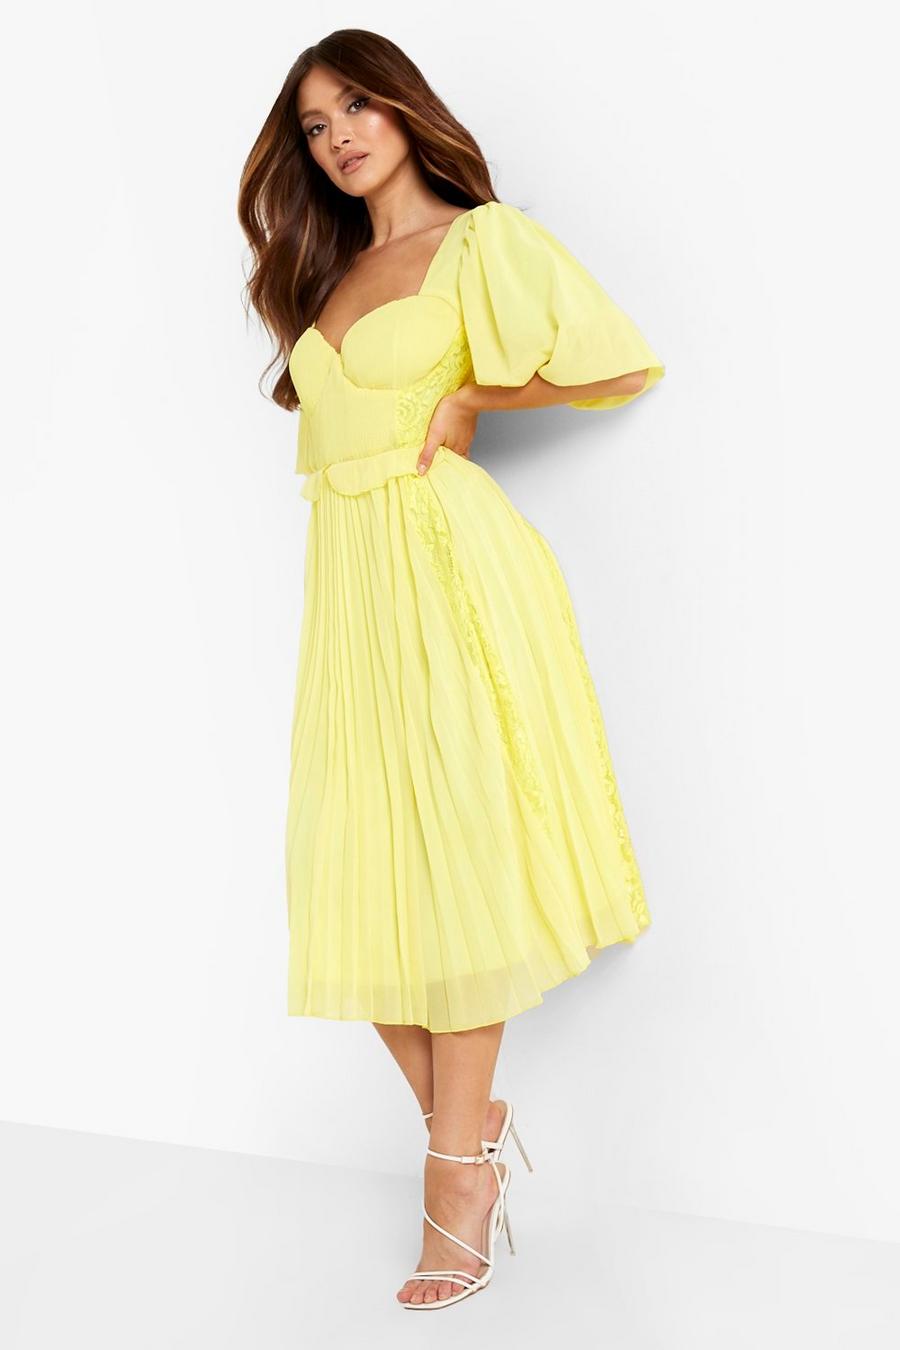 לימון giallo שמלת סמוק מידי עם קפלים ושרוולים קצרים